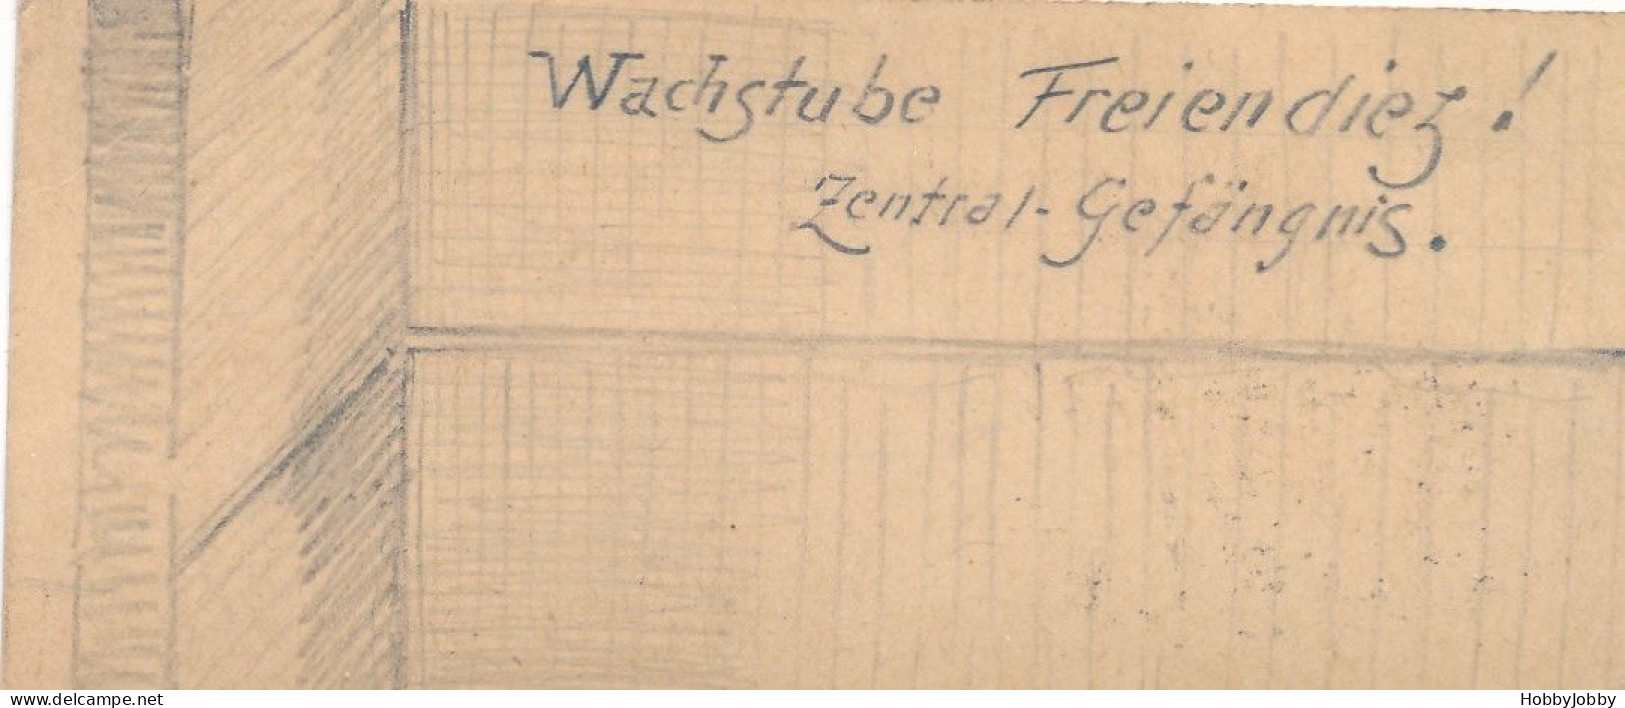 2 Stück I. WK Handgezeichnet-Bleistift:Wach-Stube Kaiser-Wilhelm-Kaserne + Wachstube-Freiendiez! Zentral Gefägnis. - Caserme